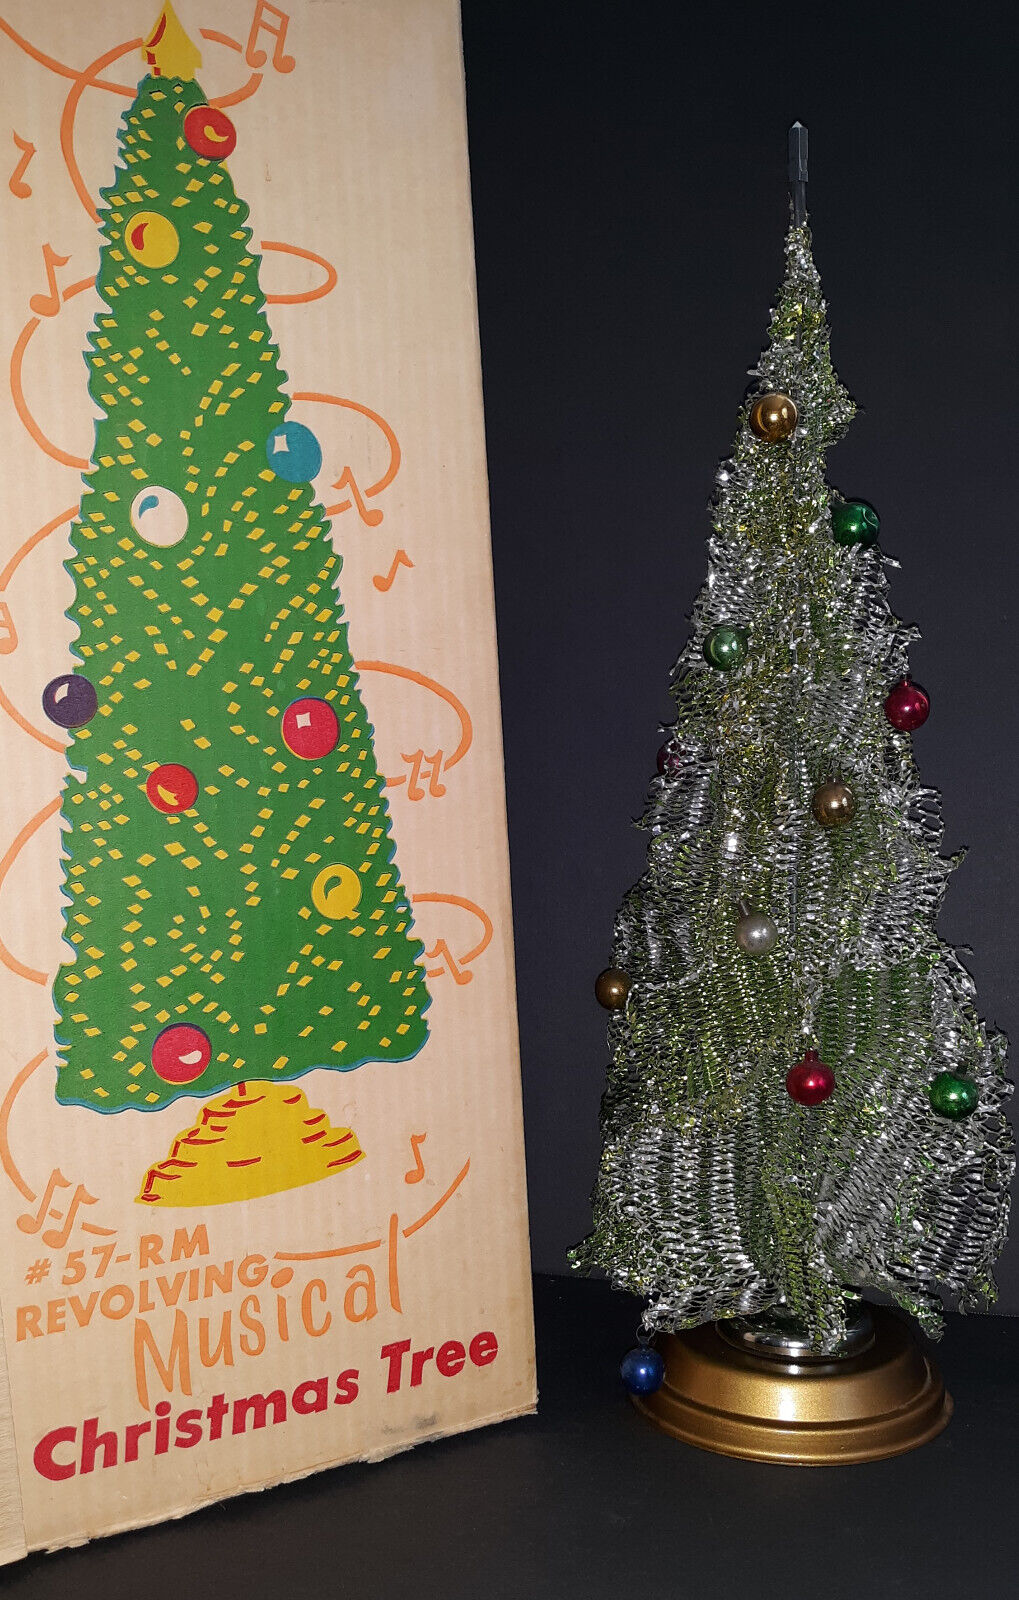 Vintage HANDY THINGS 57-RM Aluminum Mesh Revolving Musical Christmas Tree IOB 